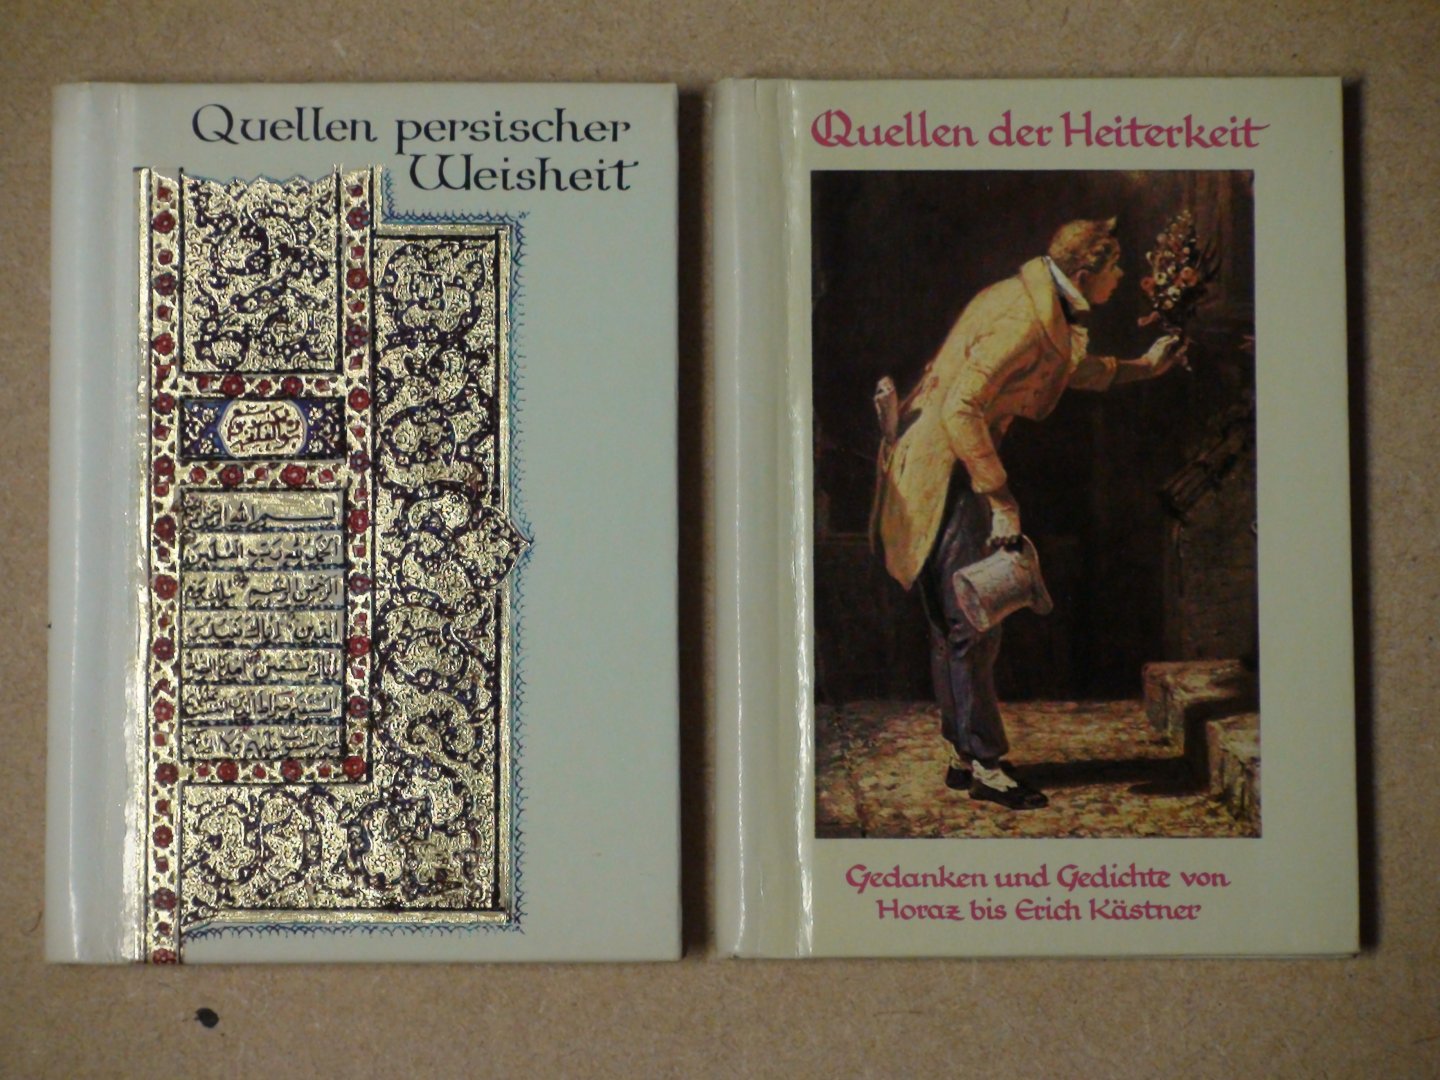  - Quellen der Heiterkeit: Buch-Kästner u.a. + Quellen Persischer Weisheit: Furdausi-Sa'di.